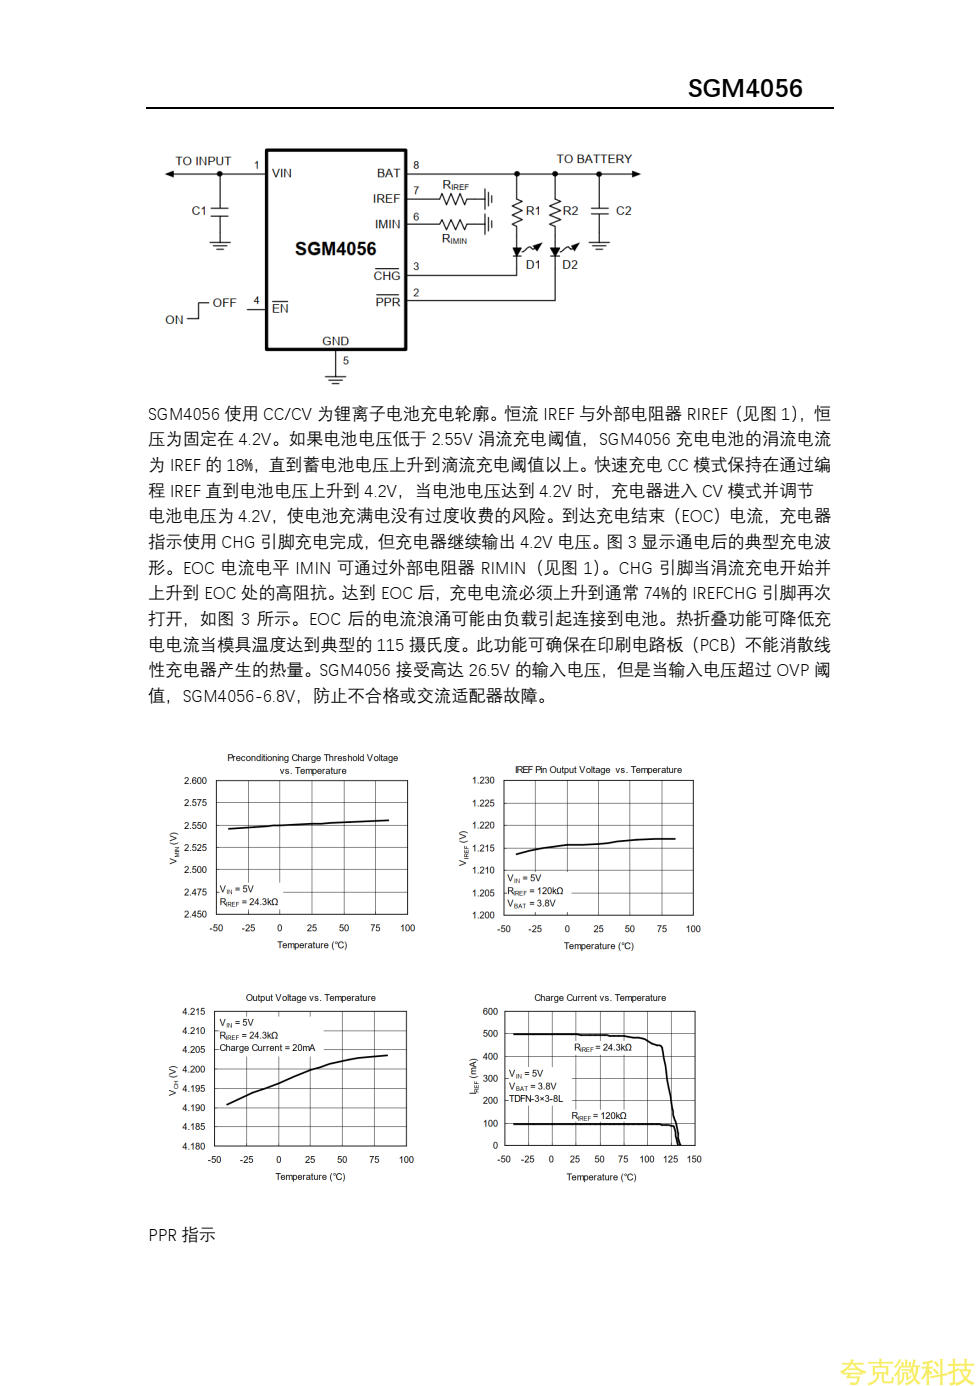 SGM4056資料，中文版，4.35V和4.2V版本PW4554